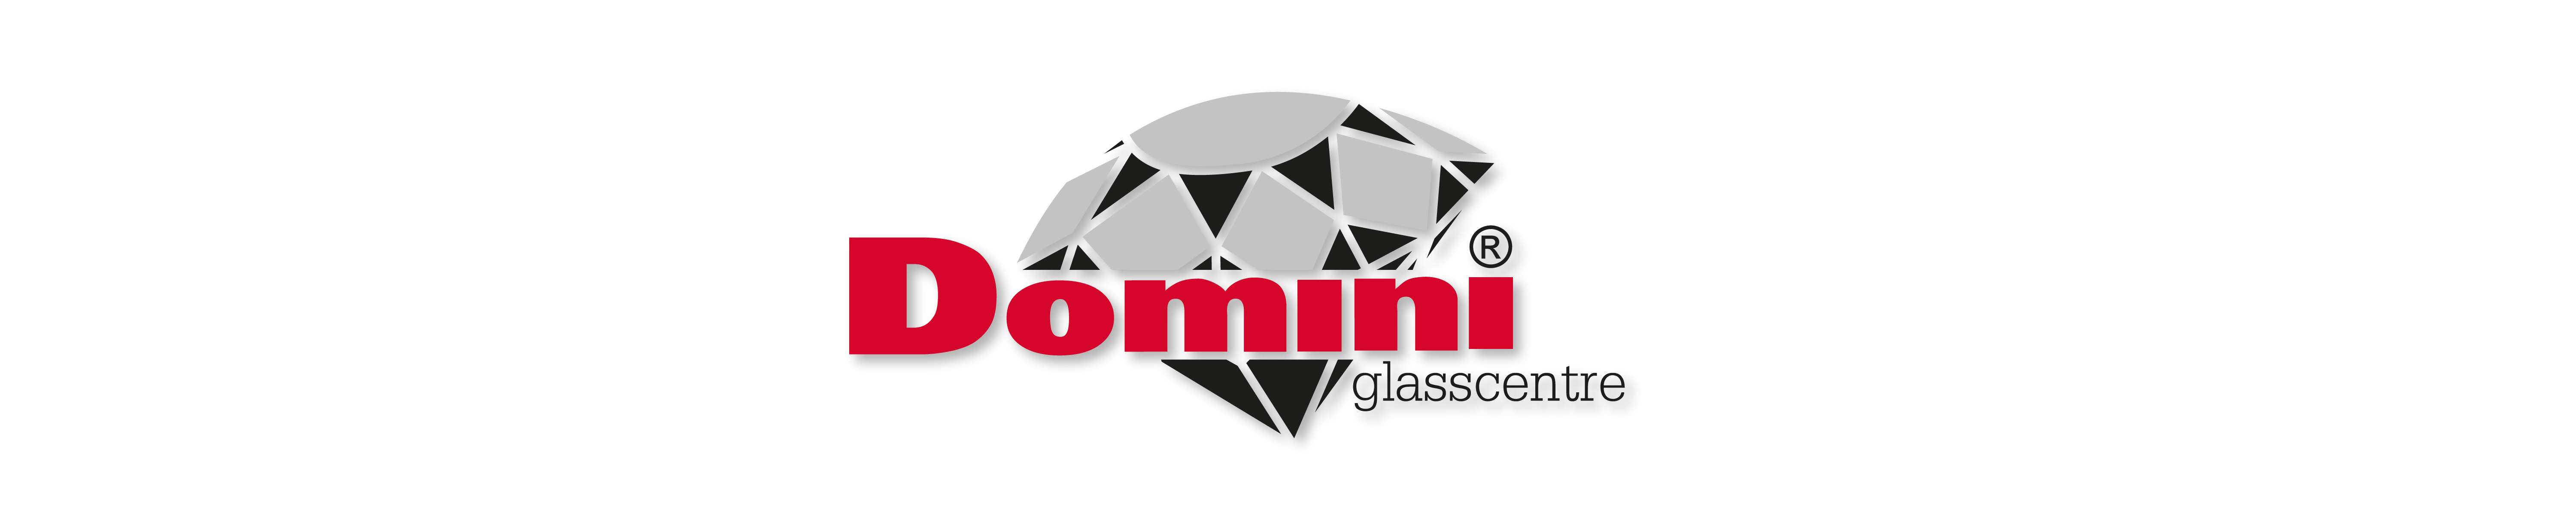 Логотип Domini